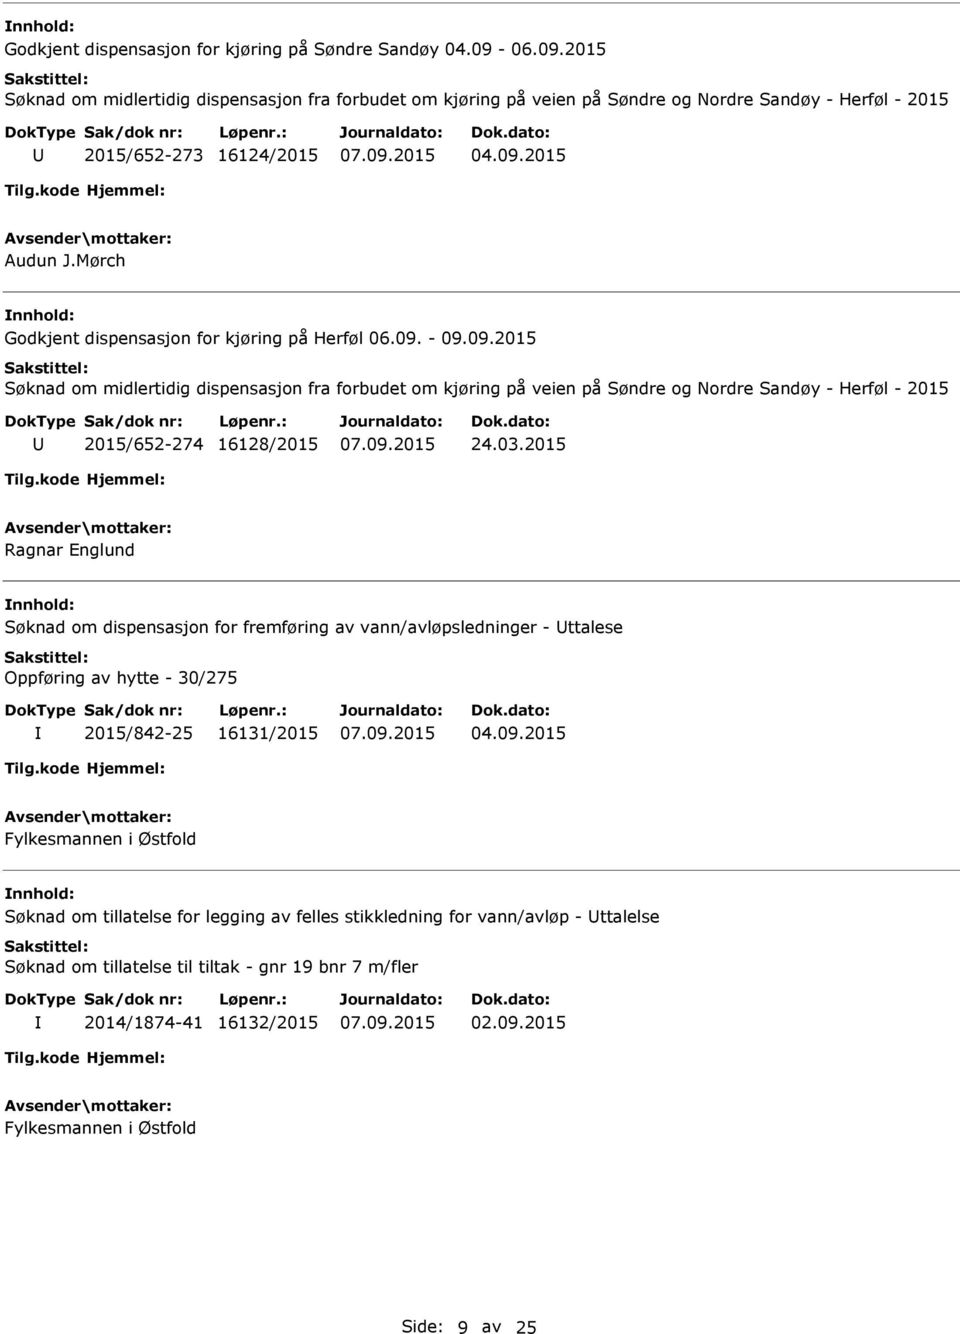 Mørch Godkjent dispensasjon for kjøring på Herføl 06.09. - 09.09.2015 Søknad om midlertidig dispensasjon fra forbudet om kjøring på veien på Søndre og Nordre Sandøy - Herføl - 2015 2015/652-274 16128/2015 24.